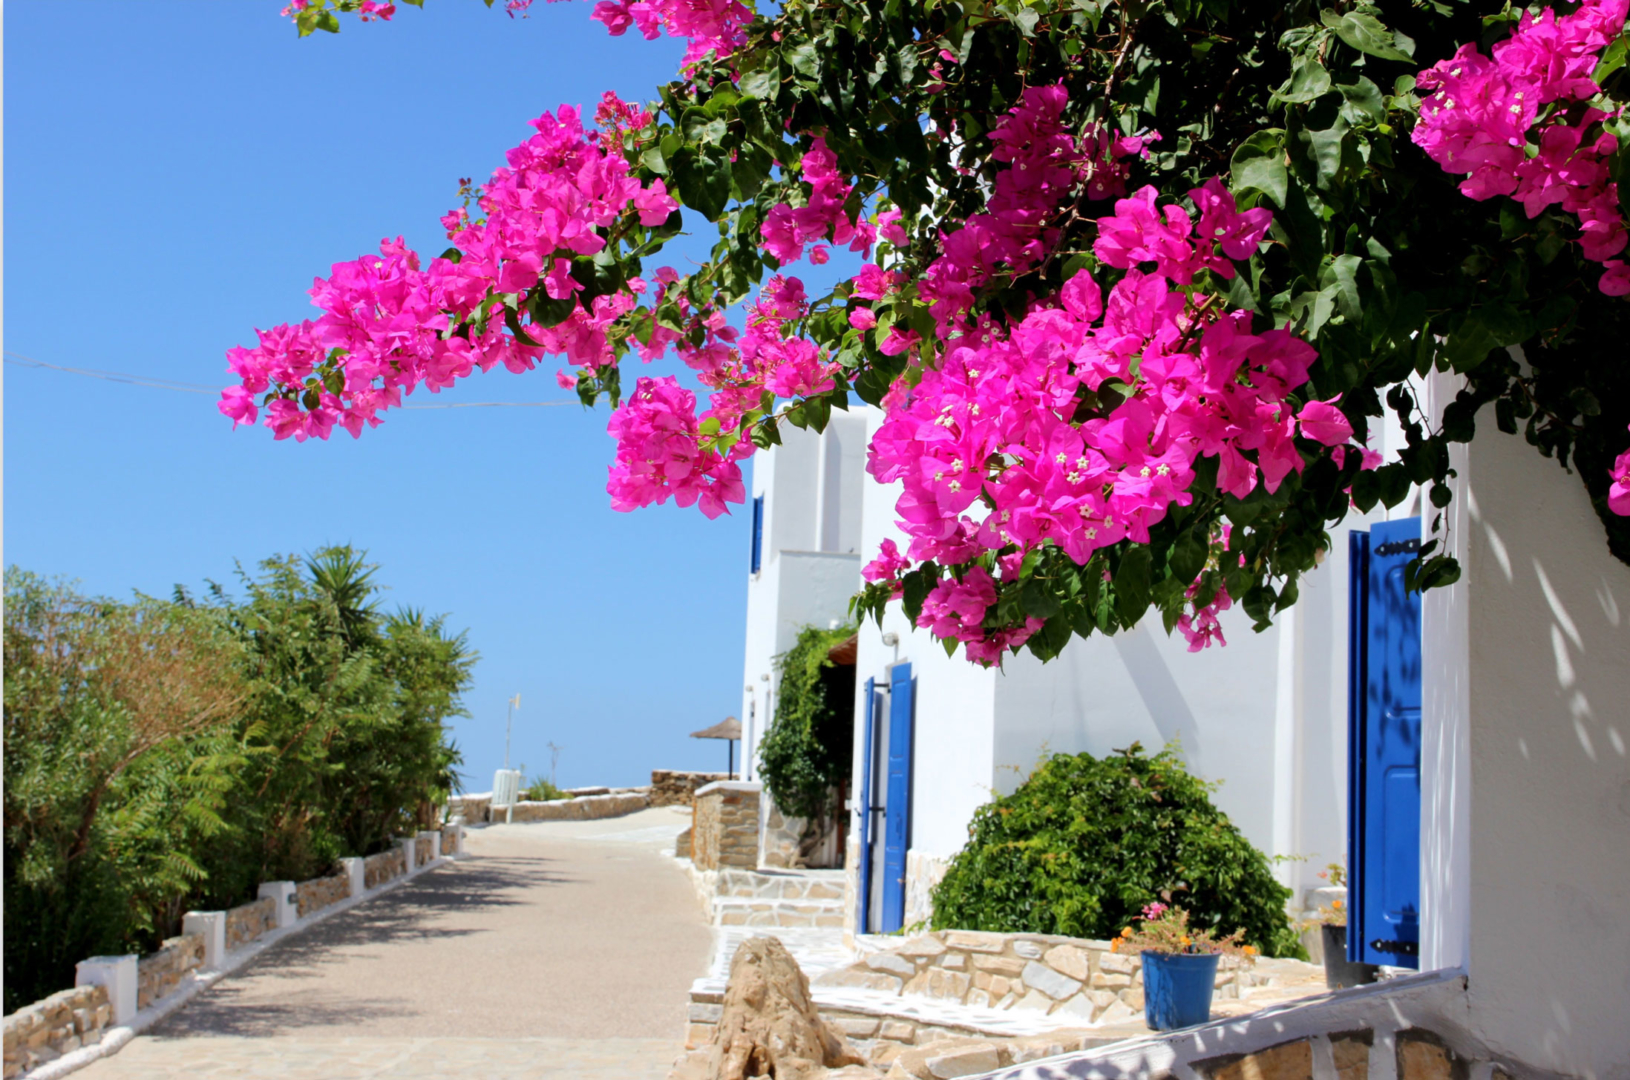 Skala Hotel - Chora - Ios Island - Cyclades - Greece